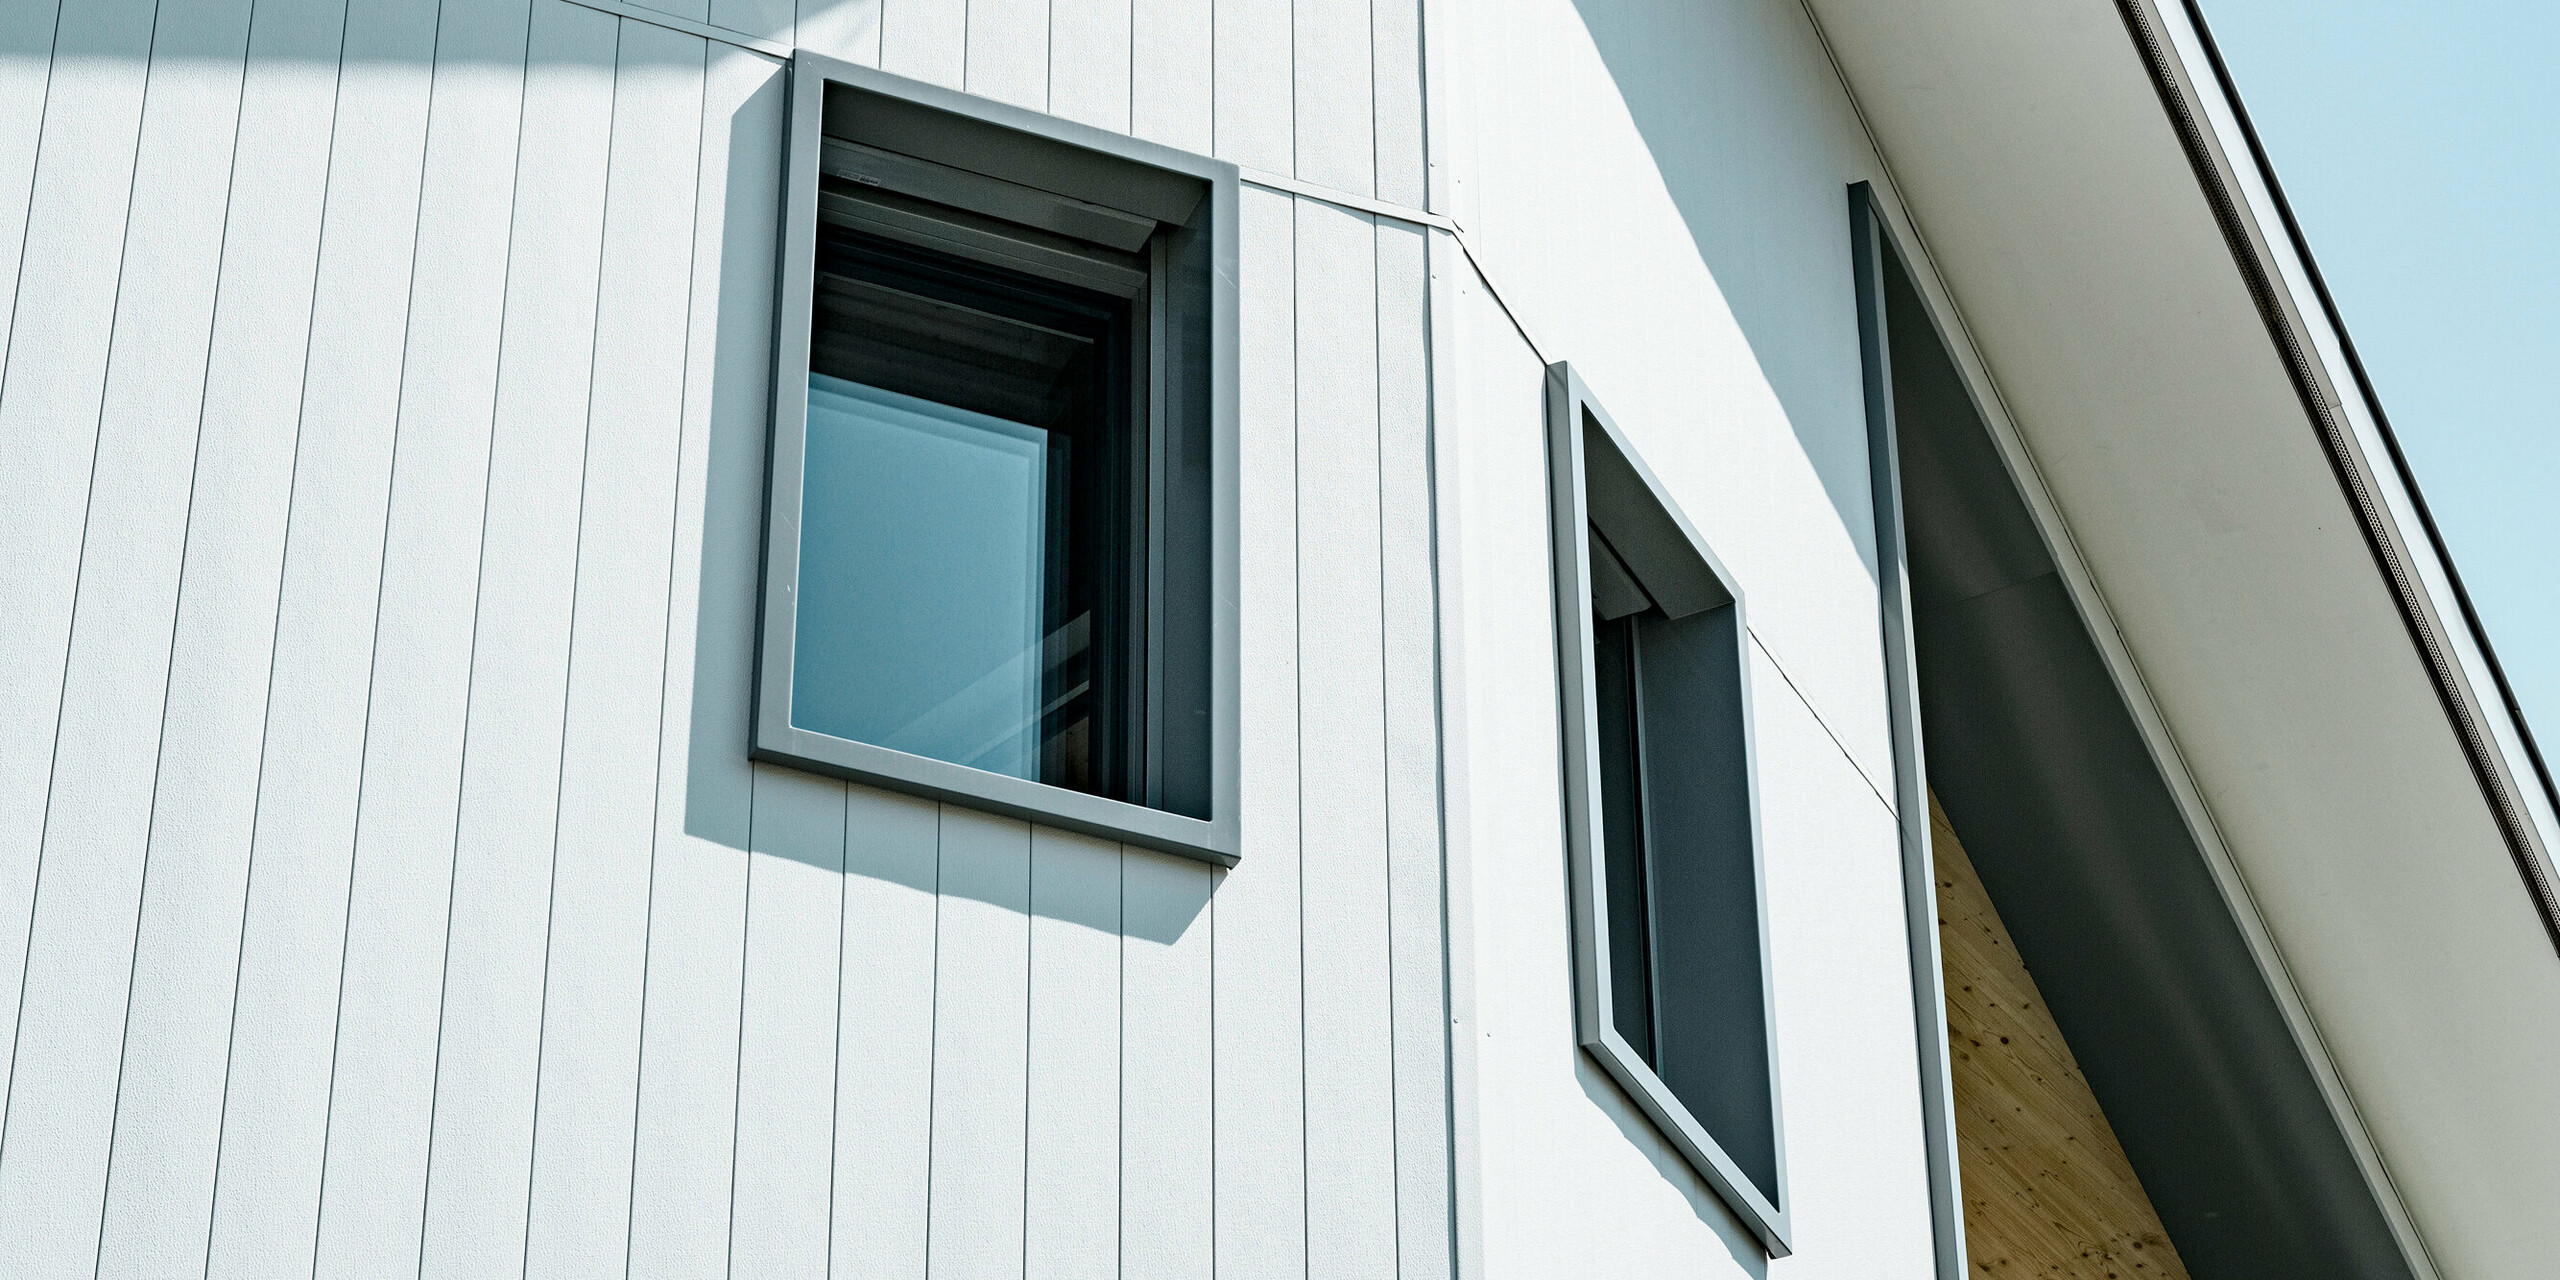 Detailaufnahme der klaren und modernen PREFA Siding Aluminiumfassade in P.10 Prefaweiß an einem Mehrfamilienhaus in Weissbad, Schweiz. Die präzise vertikale Ausrichtung der Sidings bildet eine ansprechende Textur und sorgt für ein dynamisches architektonisches Element. Die tief eingelassenen Fenster mit dunklen Rahmen kontrastieren effektvoll gegen die helle Fassade, betonen die geradlinige Ästhetik des Gebäudes und spiegeln die hohe Qualität der PREFA Aluminiumprodukte wider.